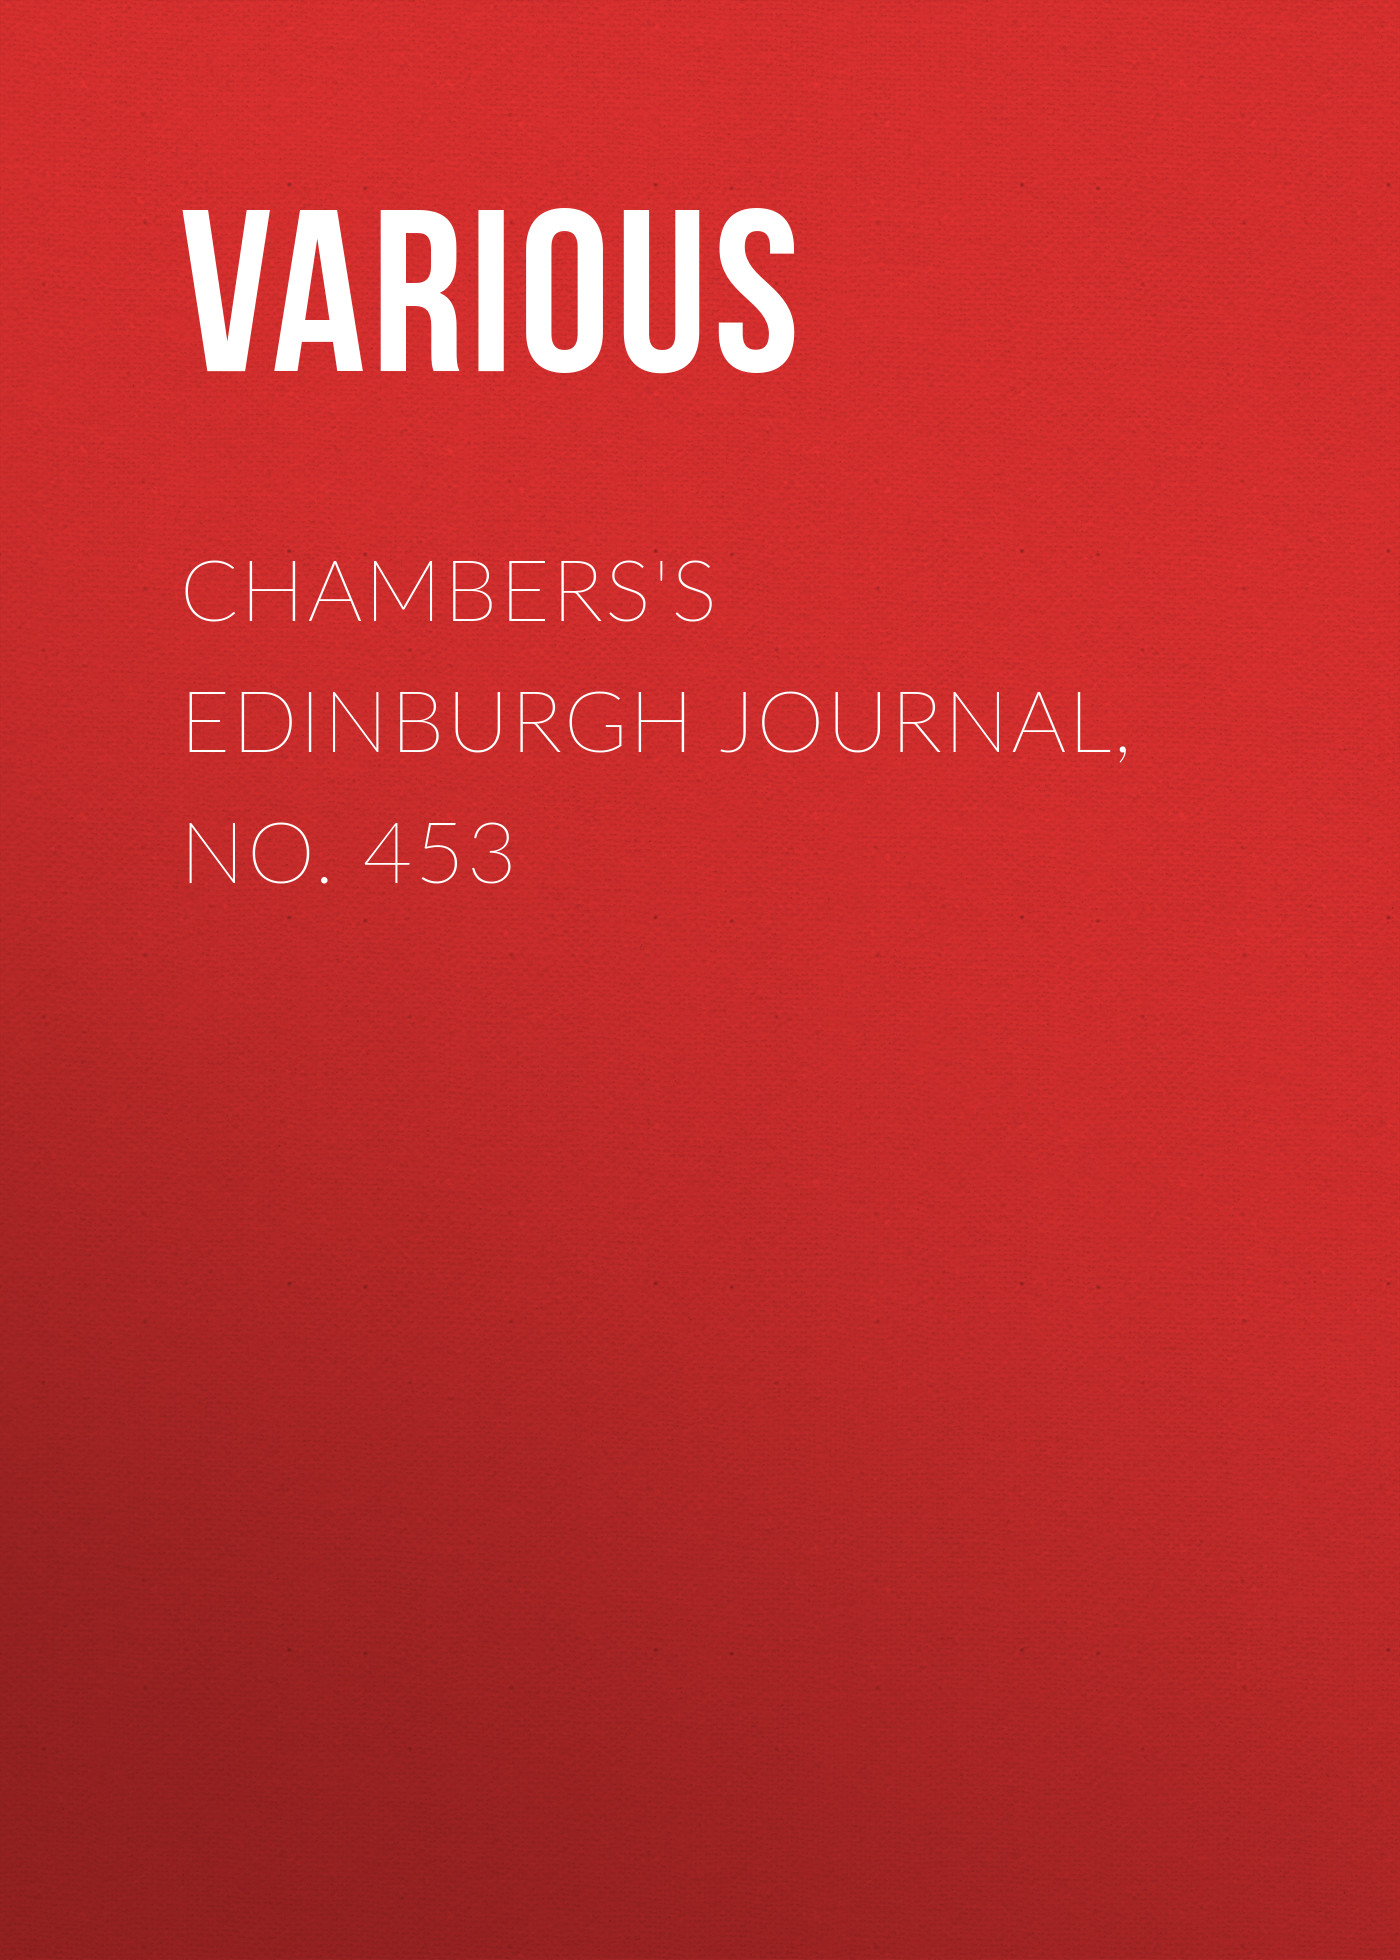 Various Chambers's Edinburgh Journal, No. 453